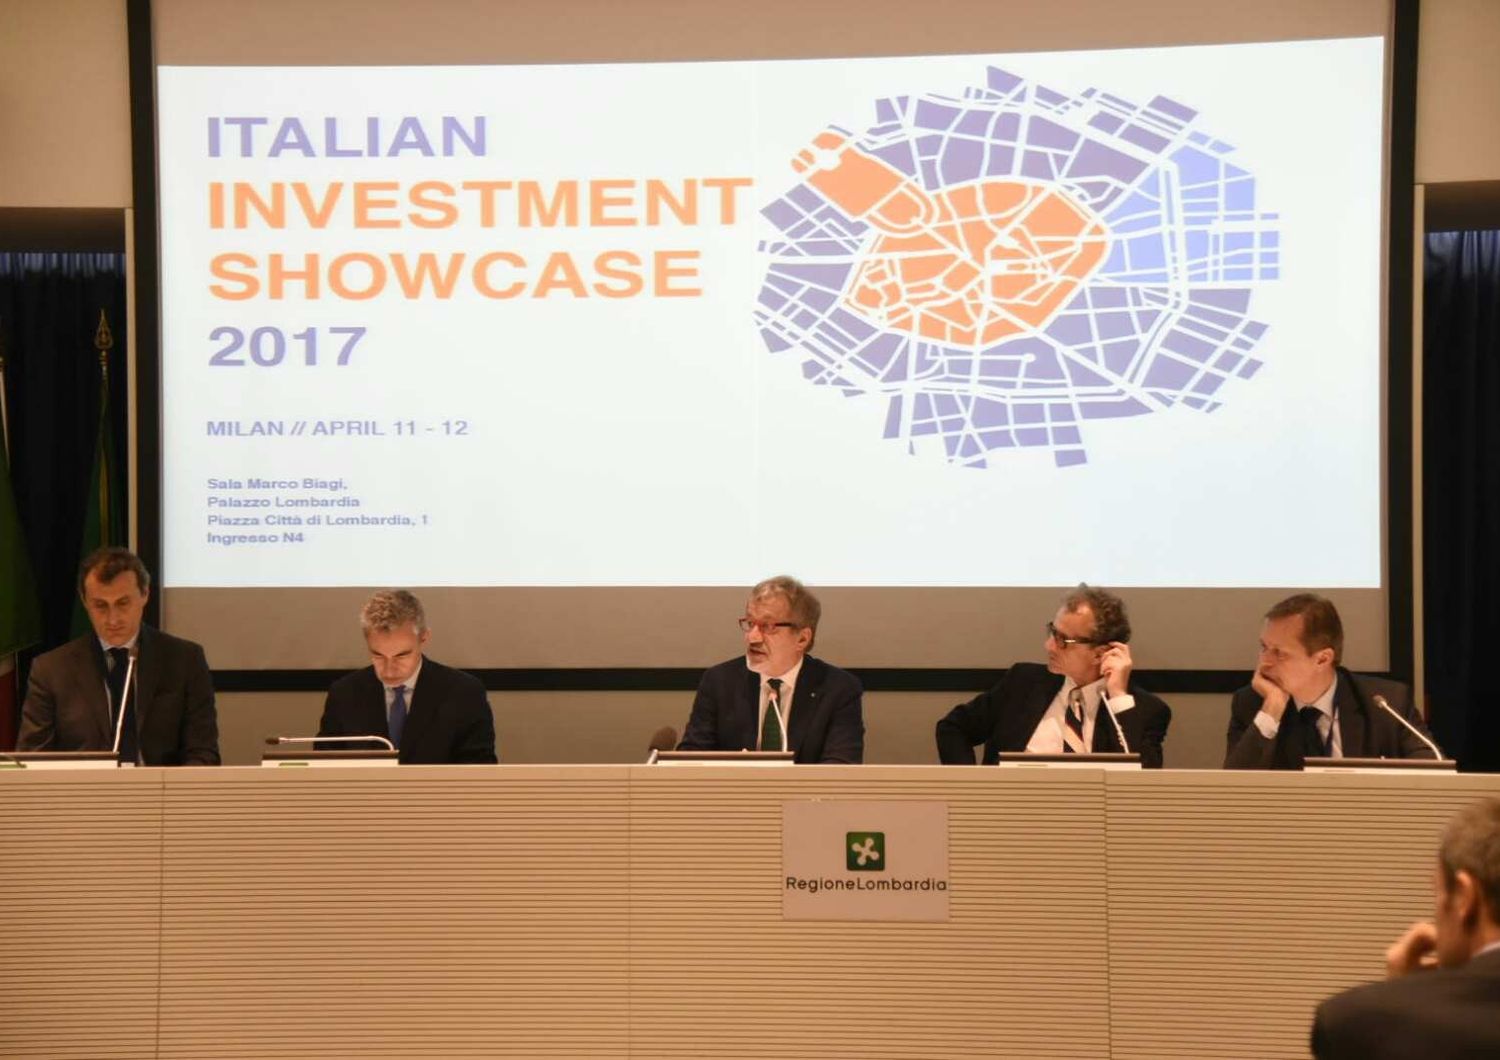 &nbsp;Italian investment showcase